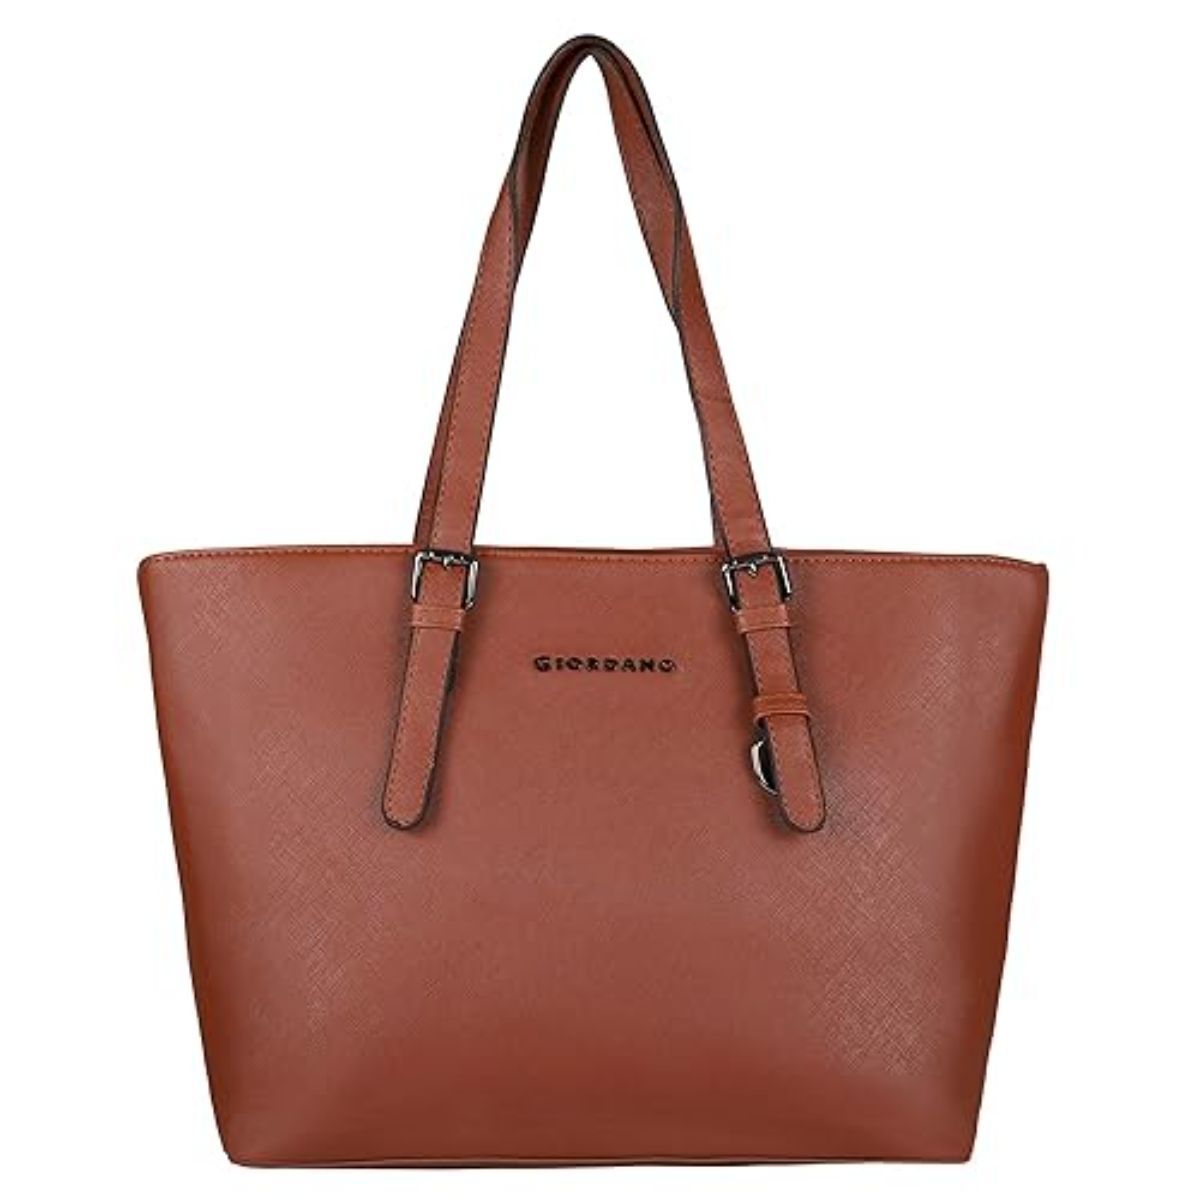 Buy Mochi Textured Black Handbag online